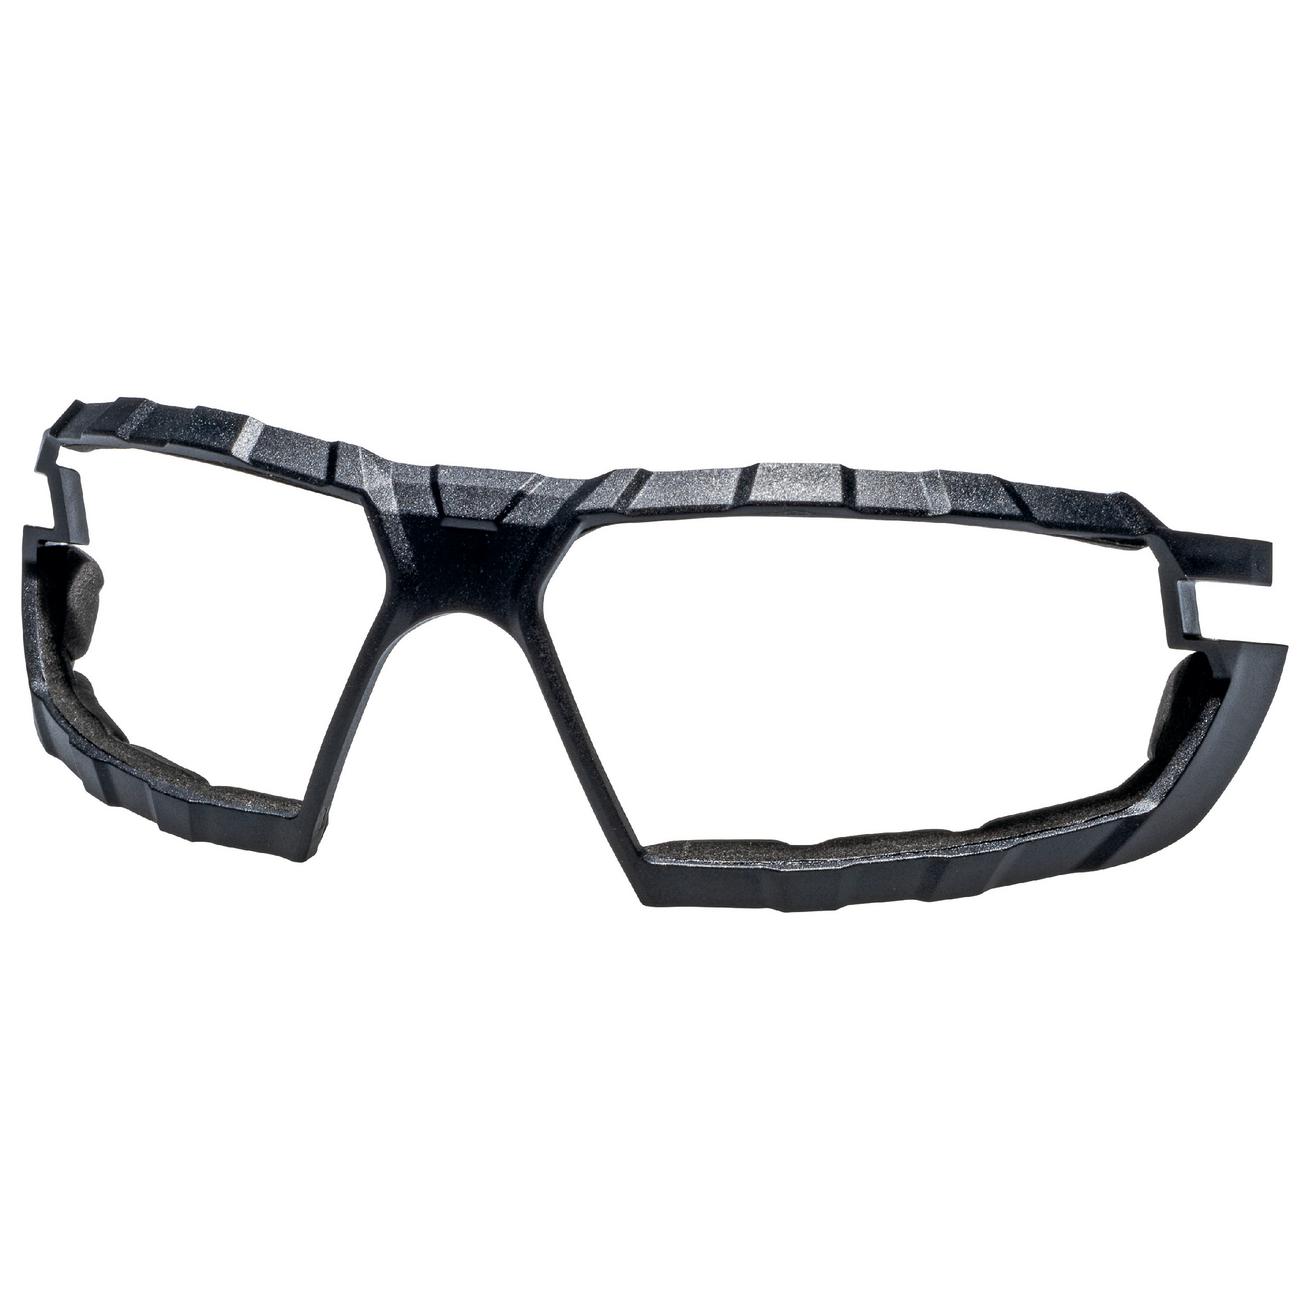 Příslušenství pro brýle uvex x-fit/x-fit pro Kód produktu: 9199001, Příslušenství: rámeček